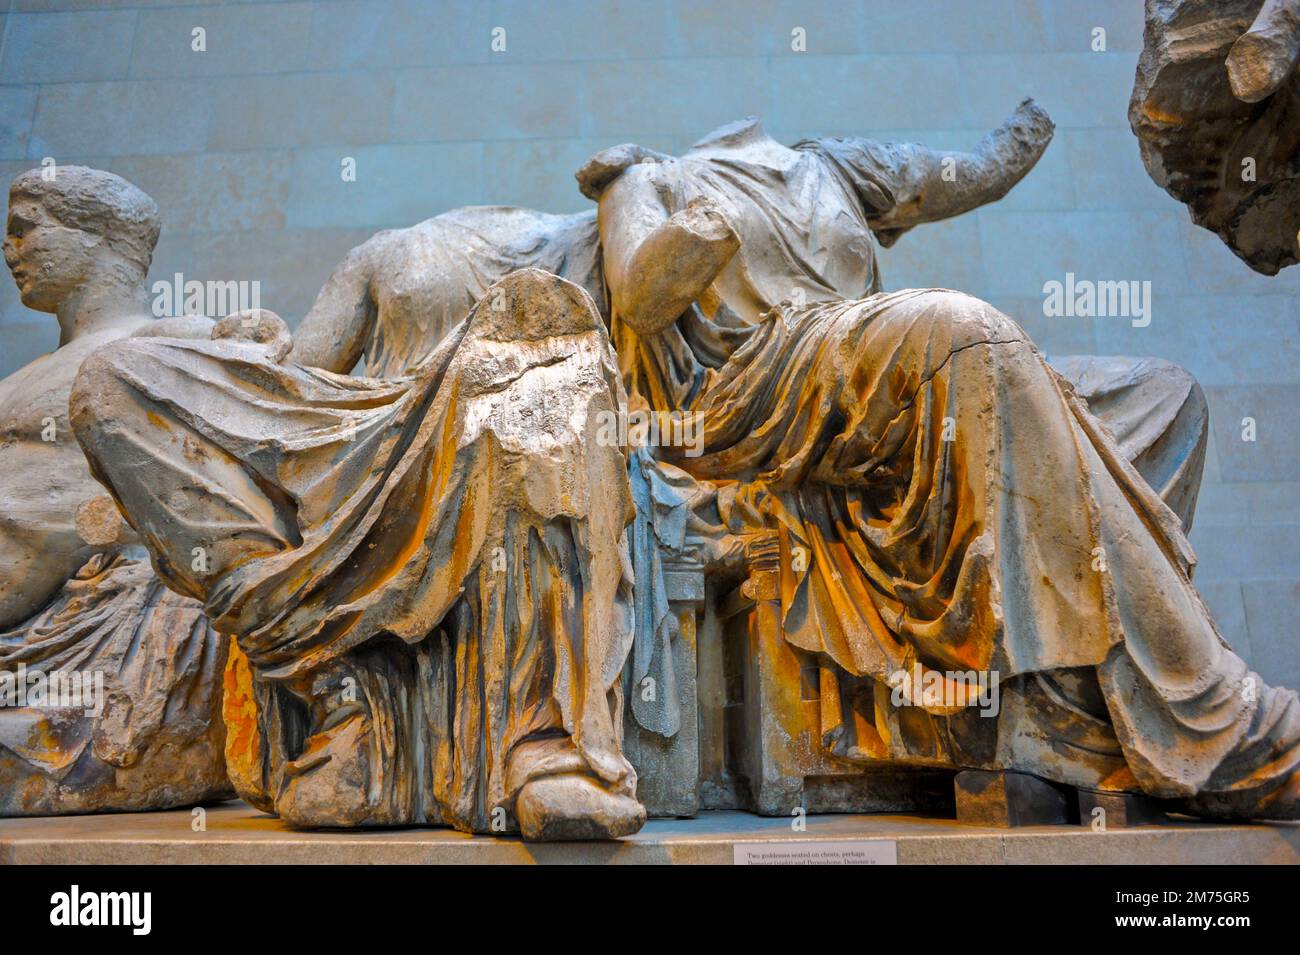 Londra, Gran Bretagna, antiche sculture greche in mostra all'interno del British Museum, le metope del Partenone, i marmi greci, l'Acropoli di Atene Dionisi, l'arte della civiltà antica Foto Stock